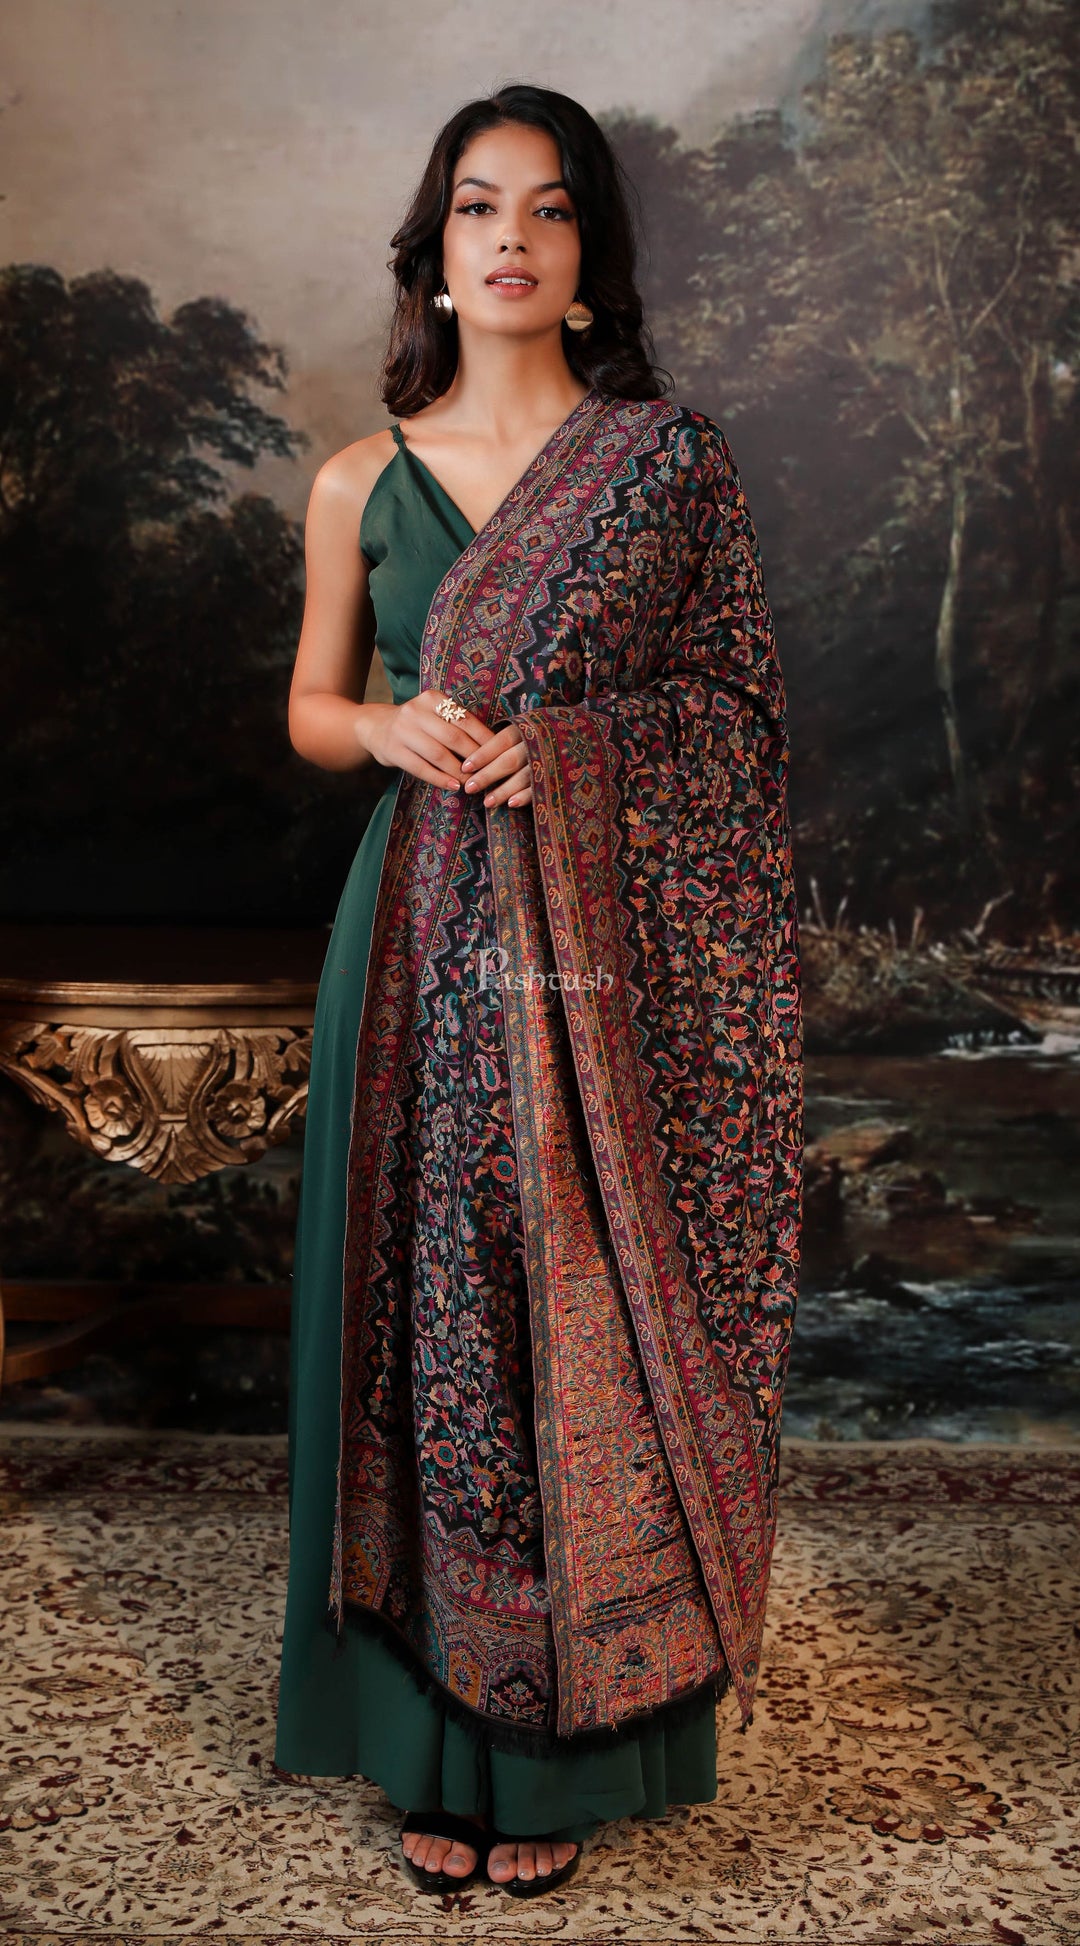 https://pashtush.in/cdn/shop/products/pashtush-pashmina-pashtush-women-faux-pashmina-shawl-ethnic-weave-design-black-30746399932470.jpg?v=1650894904&width=1080